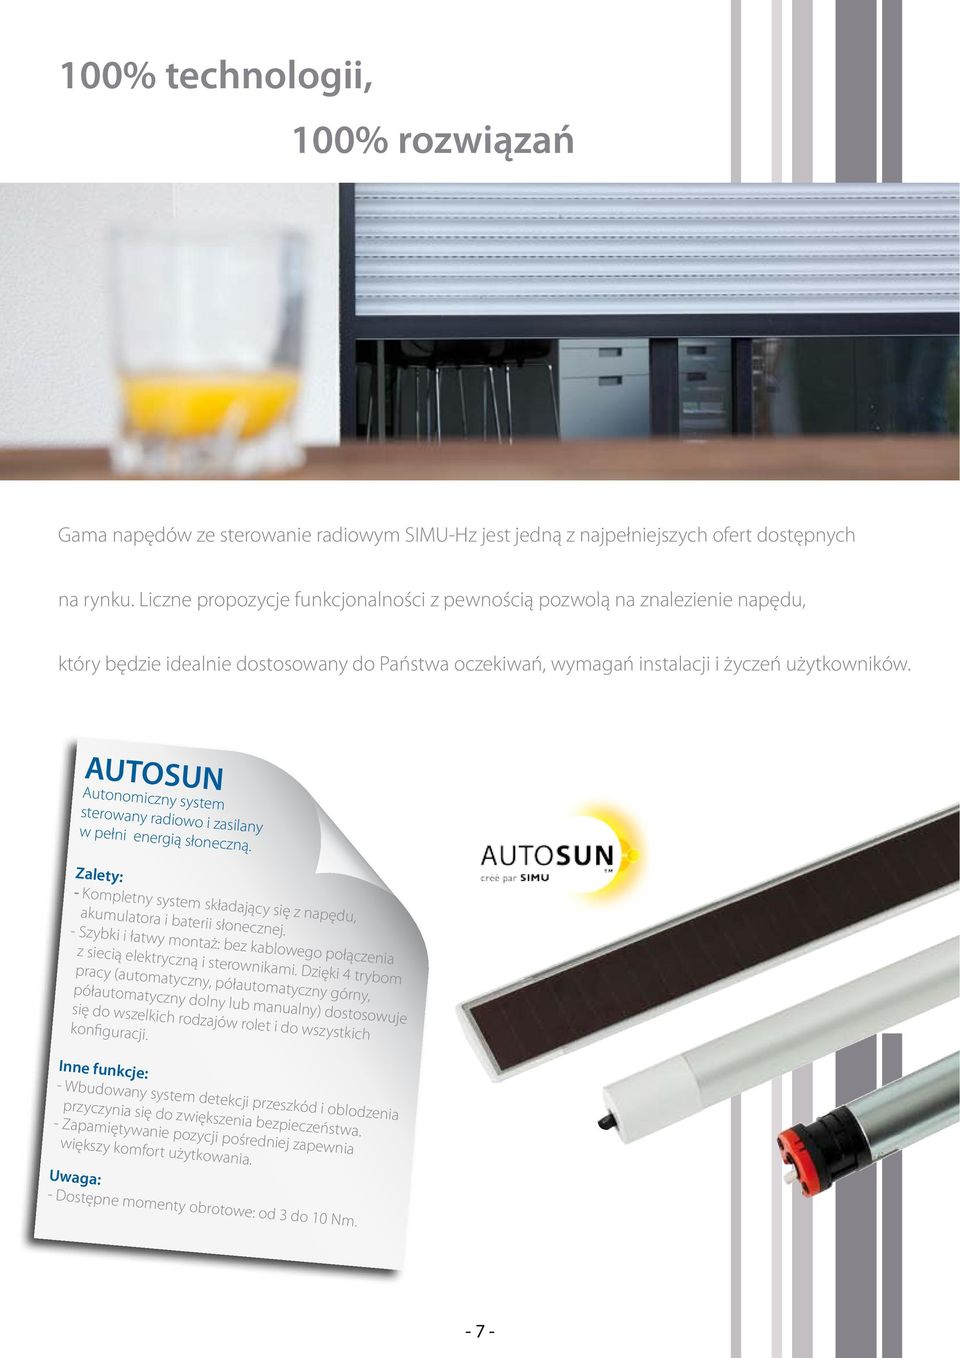 AUTOSUN Autonomiczny system sterowany radiowo i zasilany w pełni energią słoneczną. - Kompletny system składający się z napędu, akumulatora i baterii słonecznej.